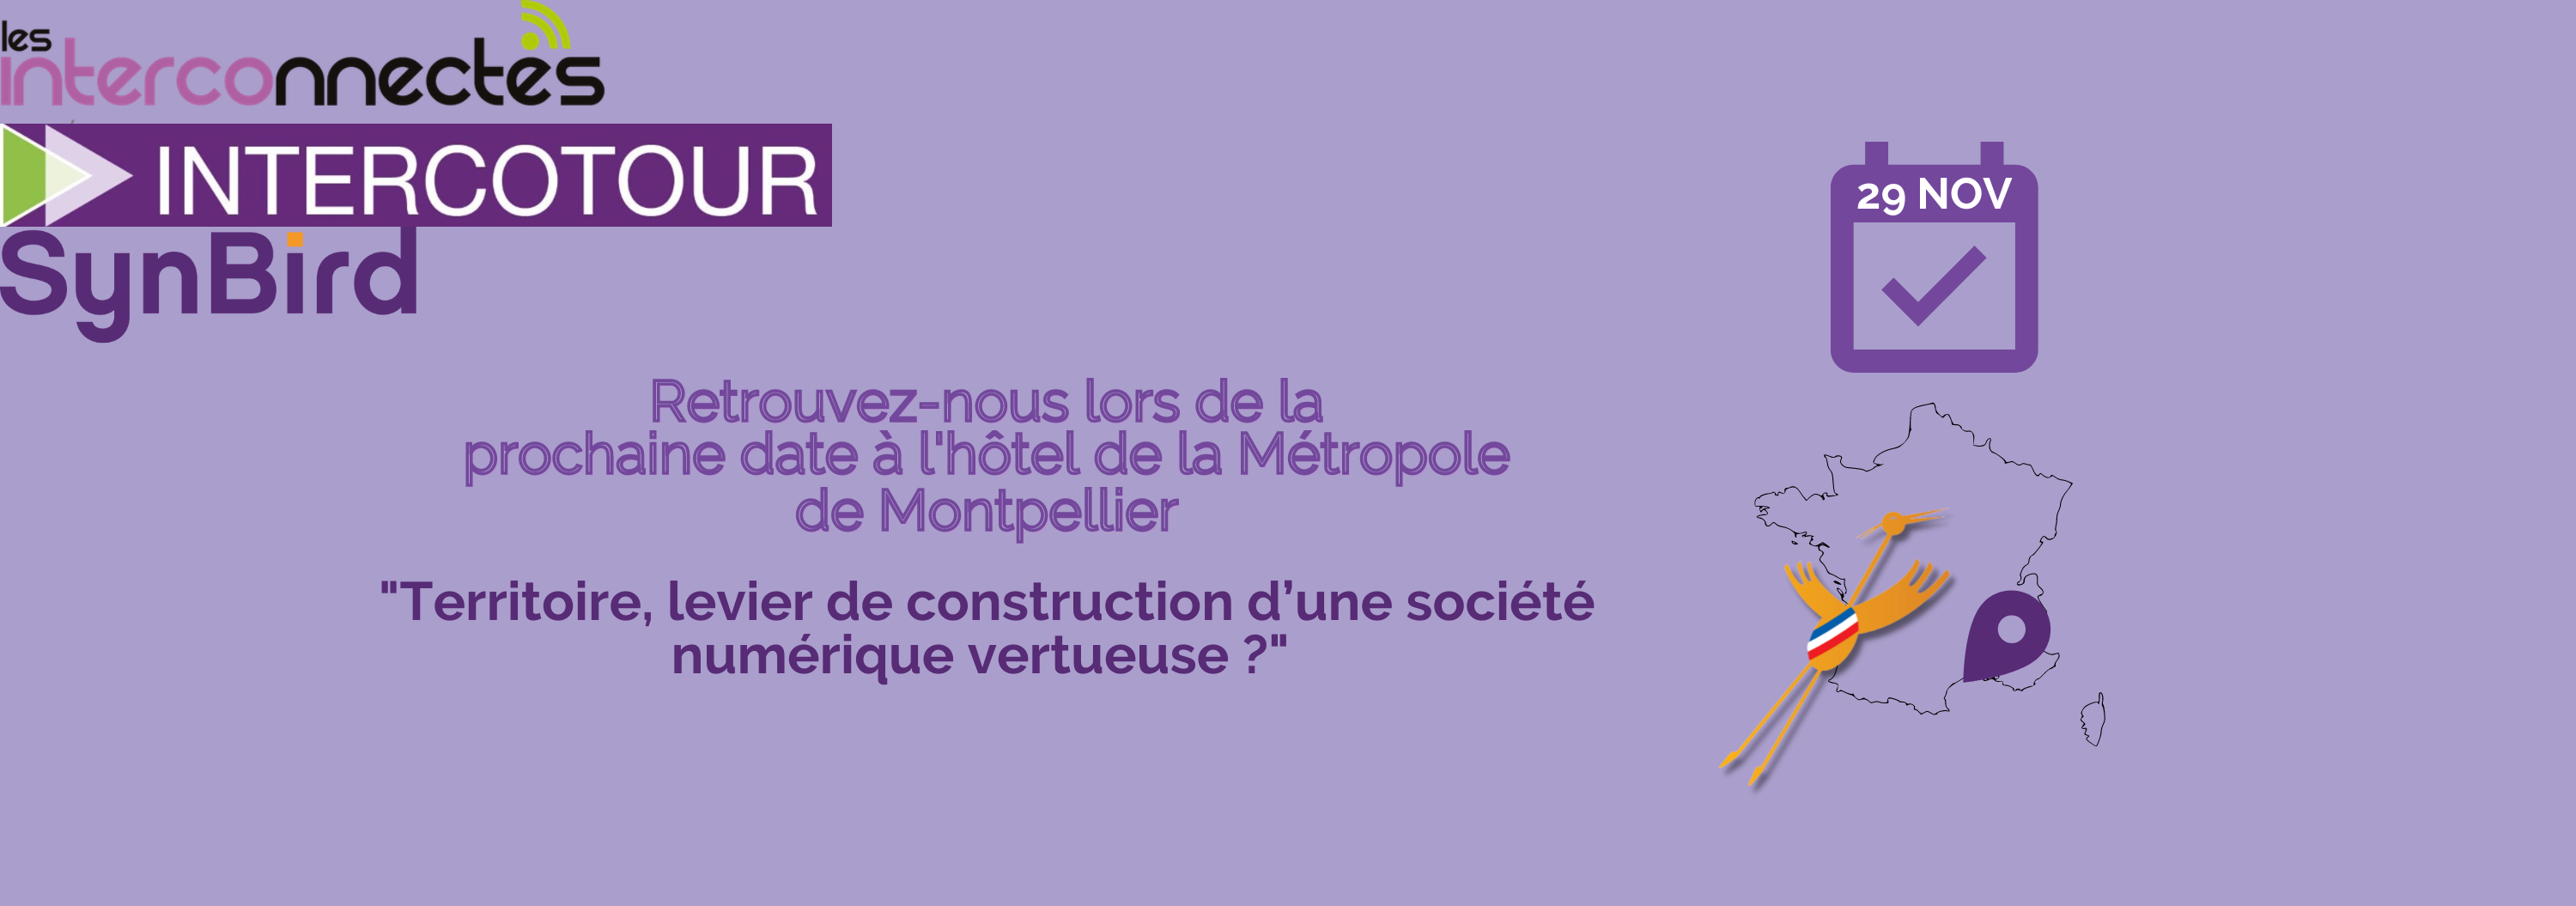 IntercoTour Occitanie le 29 novembre : société numérique vertueuse